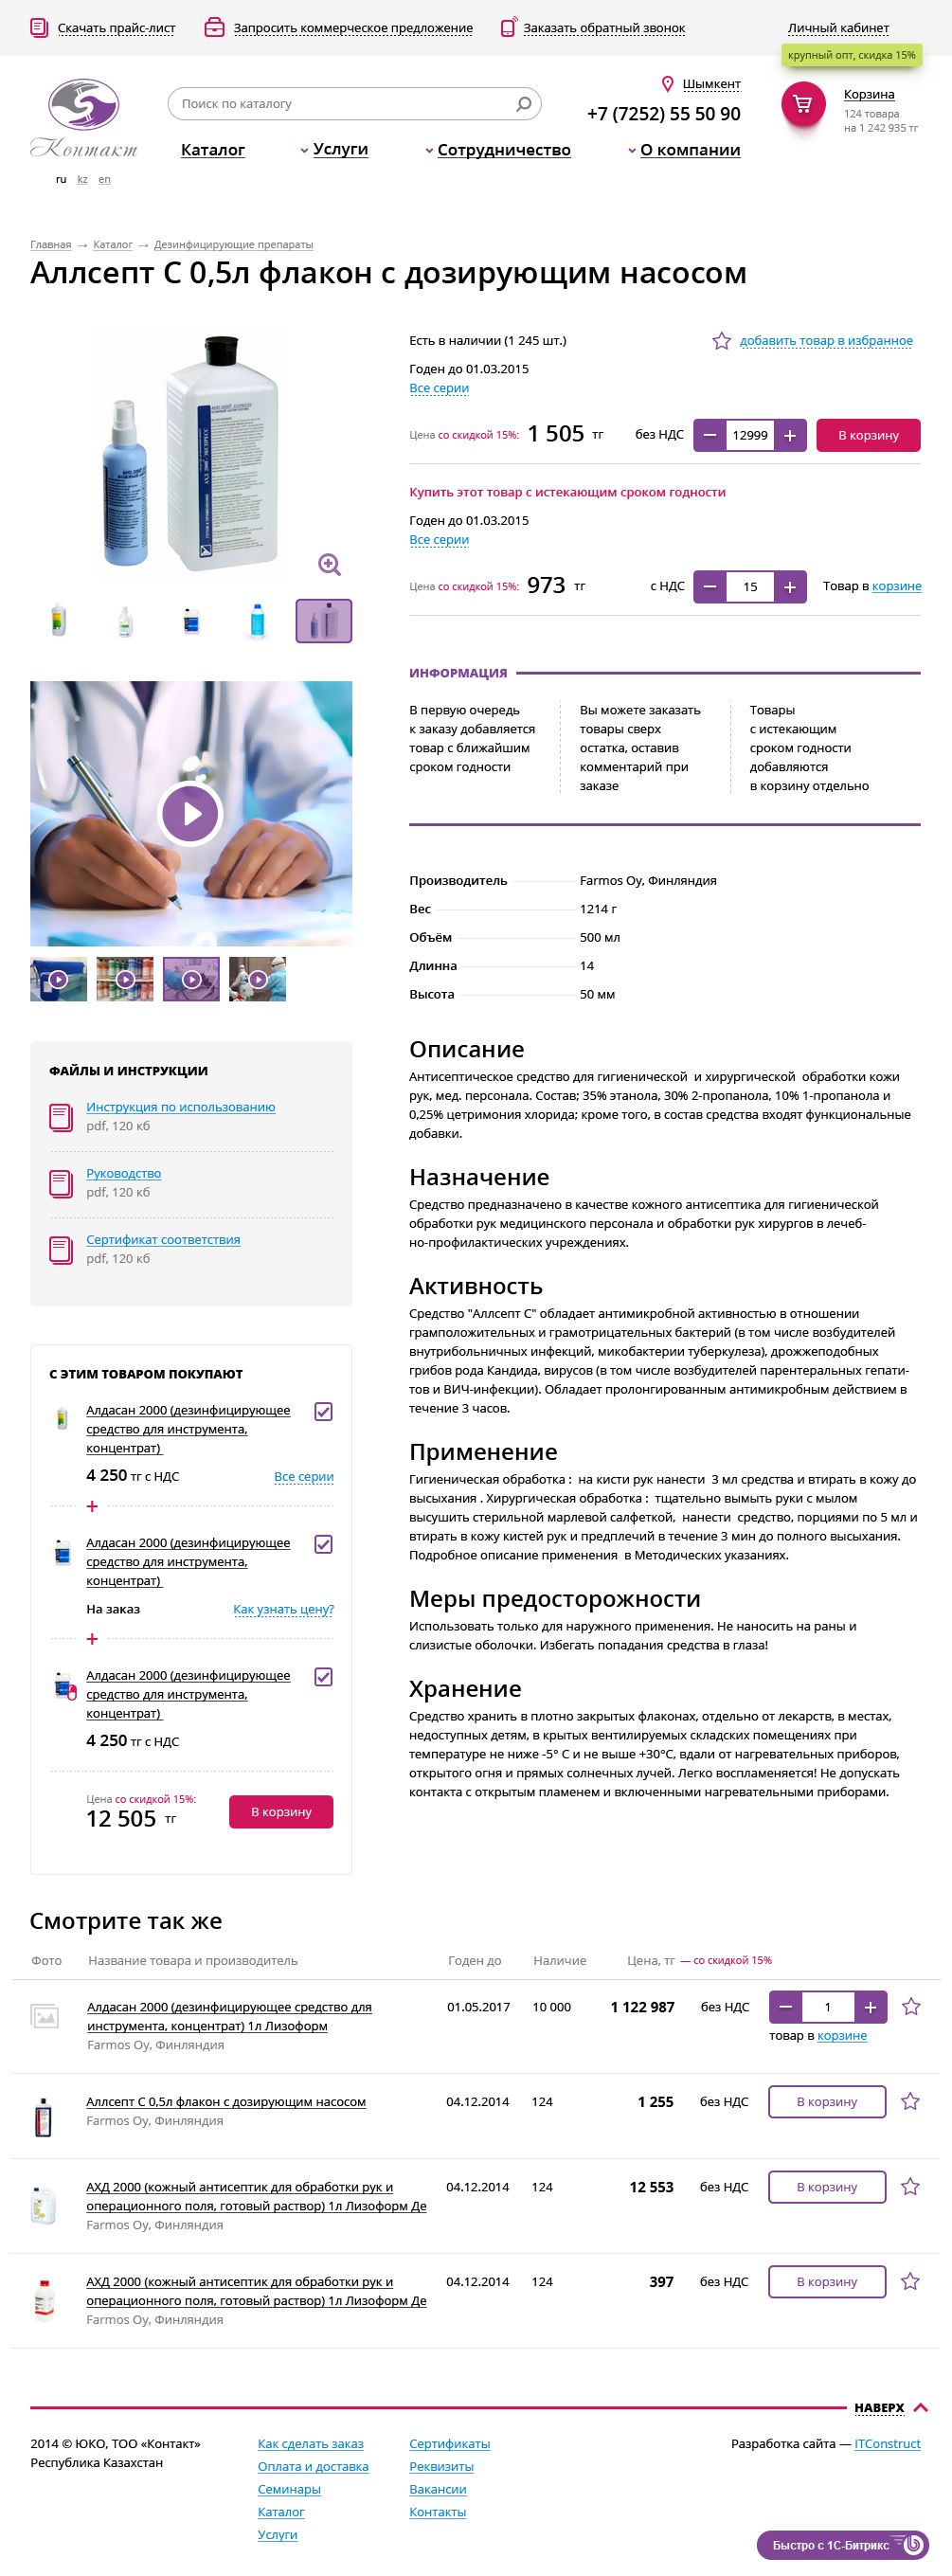 оптовый интернет-магазин фармацевтической продукции "контакт"